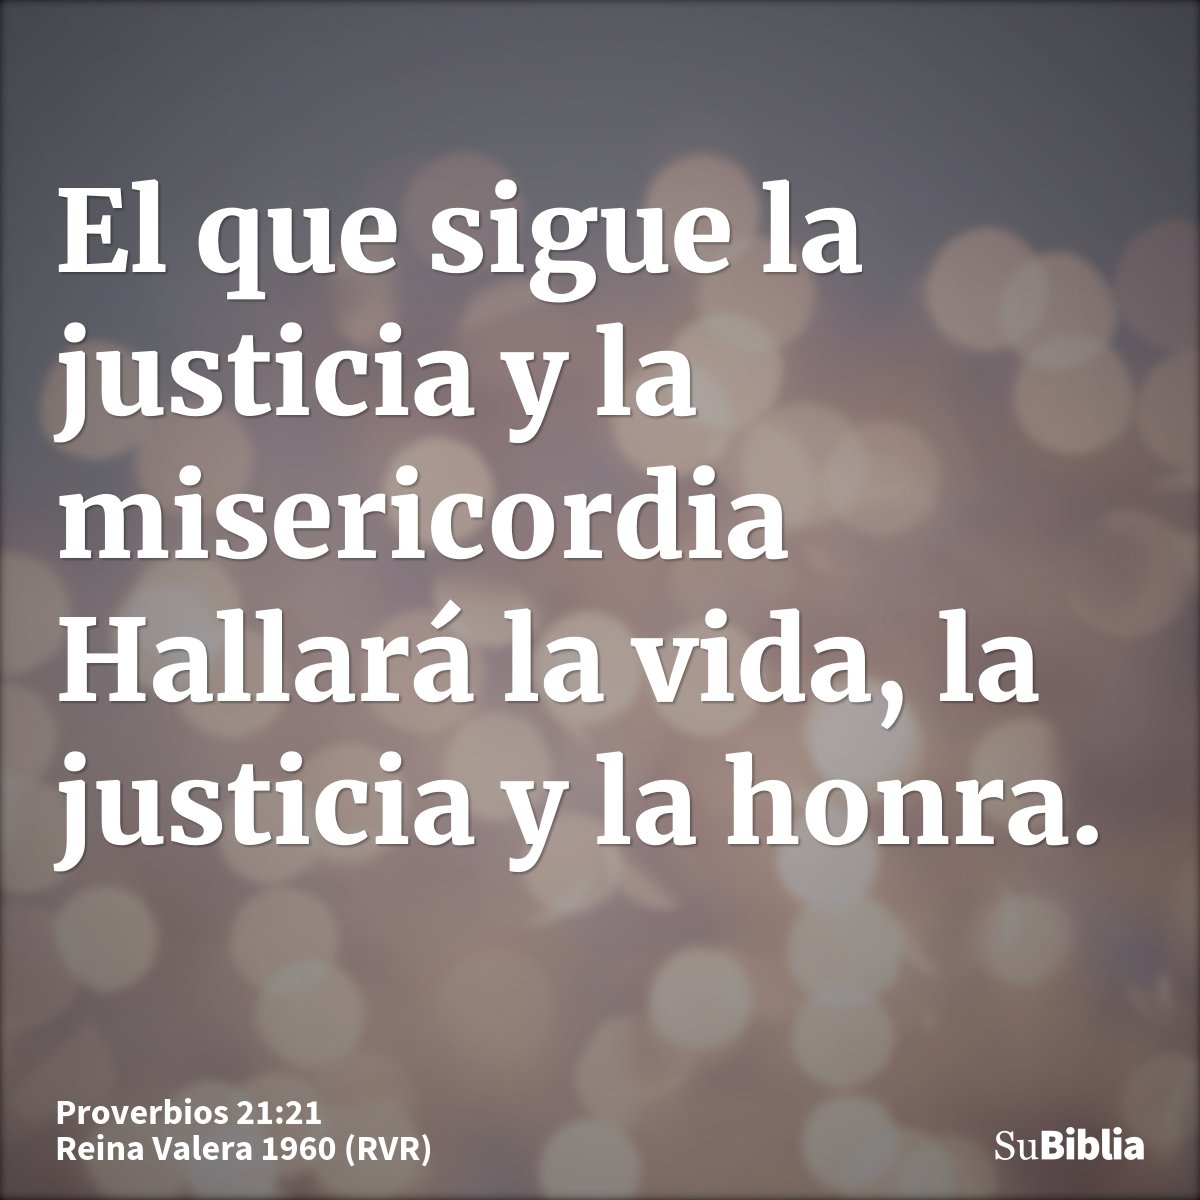 El que sigue la justicia y la misericordia Hallará la vida, la justicia y la honra.